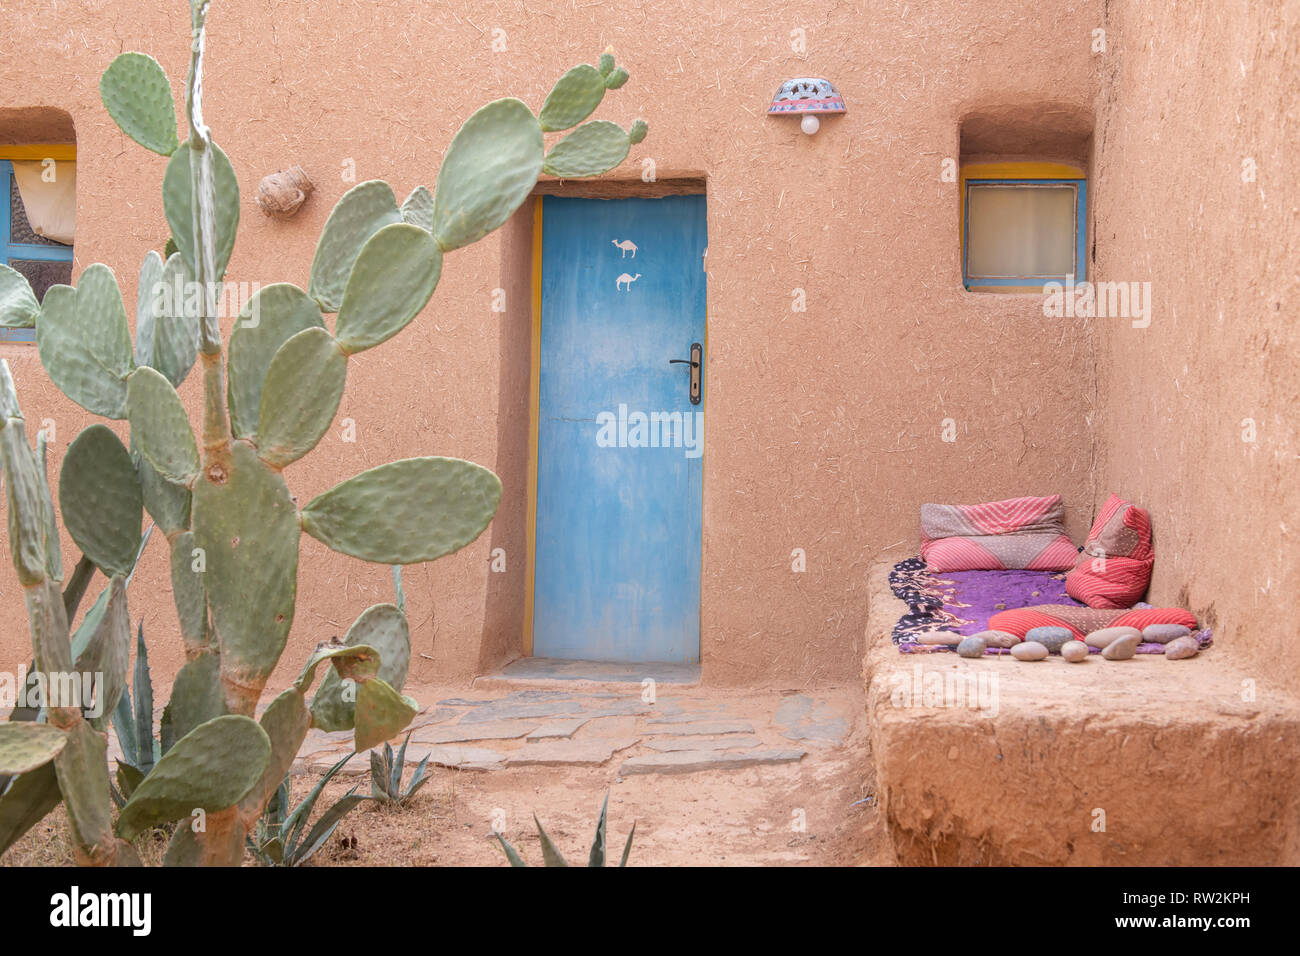 Extérieur de maison construite en pisé avec porte bleue et cactus en avant, Oasis Tighmert, Maroc Banque D'Images